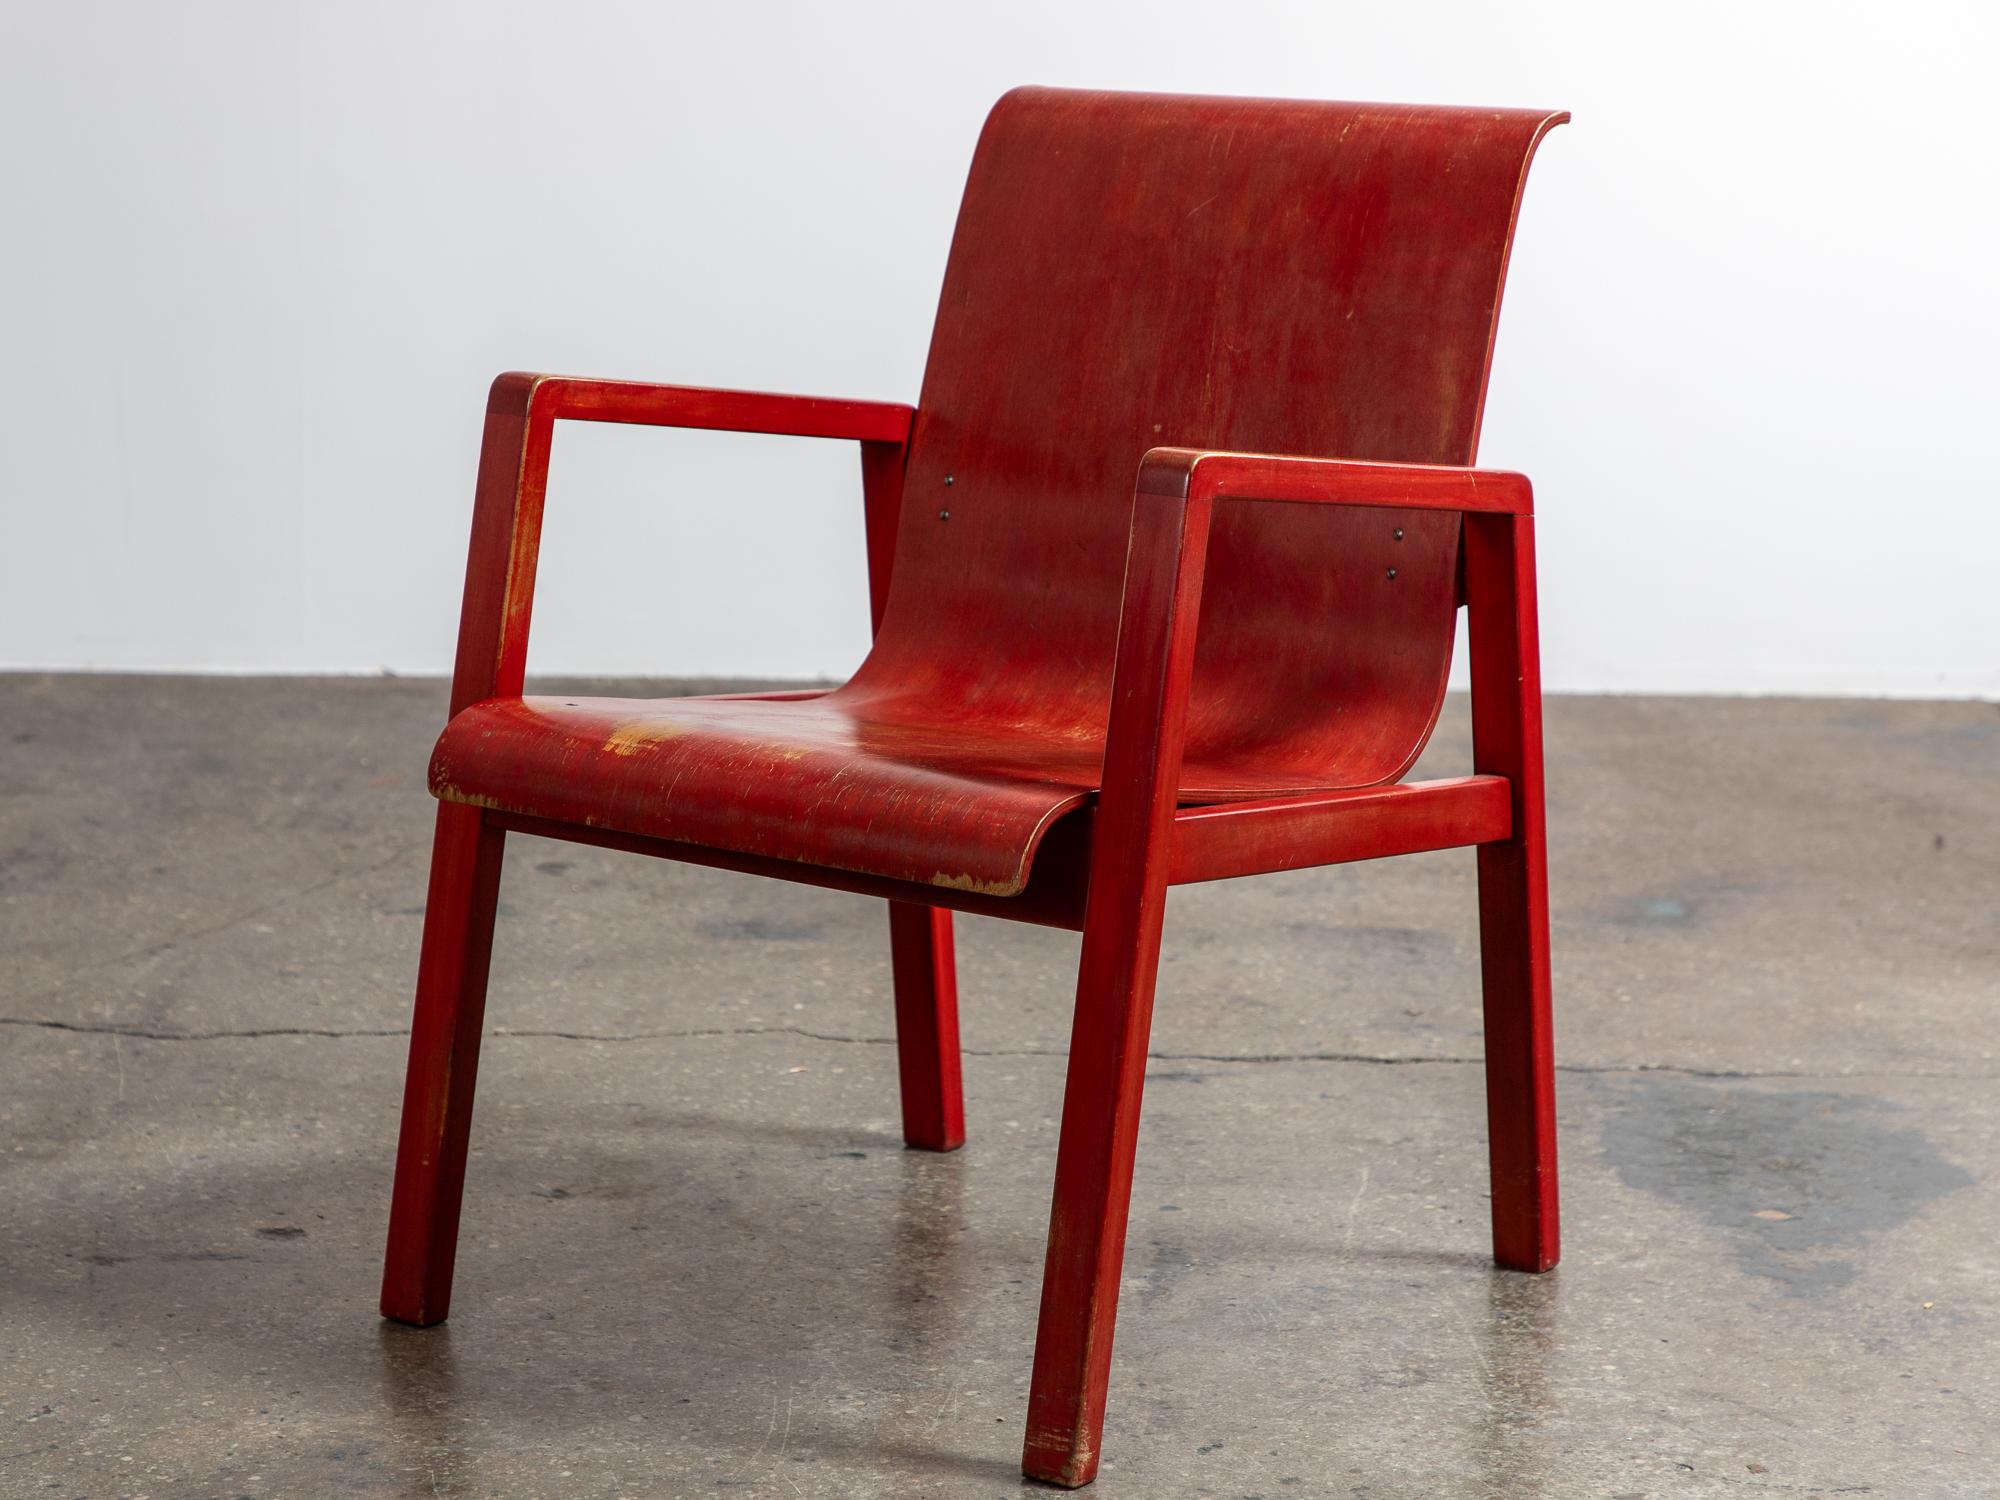 Ein auffälliger, rot lackierter Flurstuhl Modell 403, entworfen von Alvar Aalto für das Paimio Sanitorium, später von Finmar herausgegeben. Der Sessel hat ein fließendes Design mit einer anmutig geschwungenen Sitzfläche und Rückenlehne aus